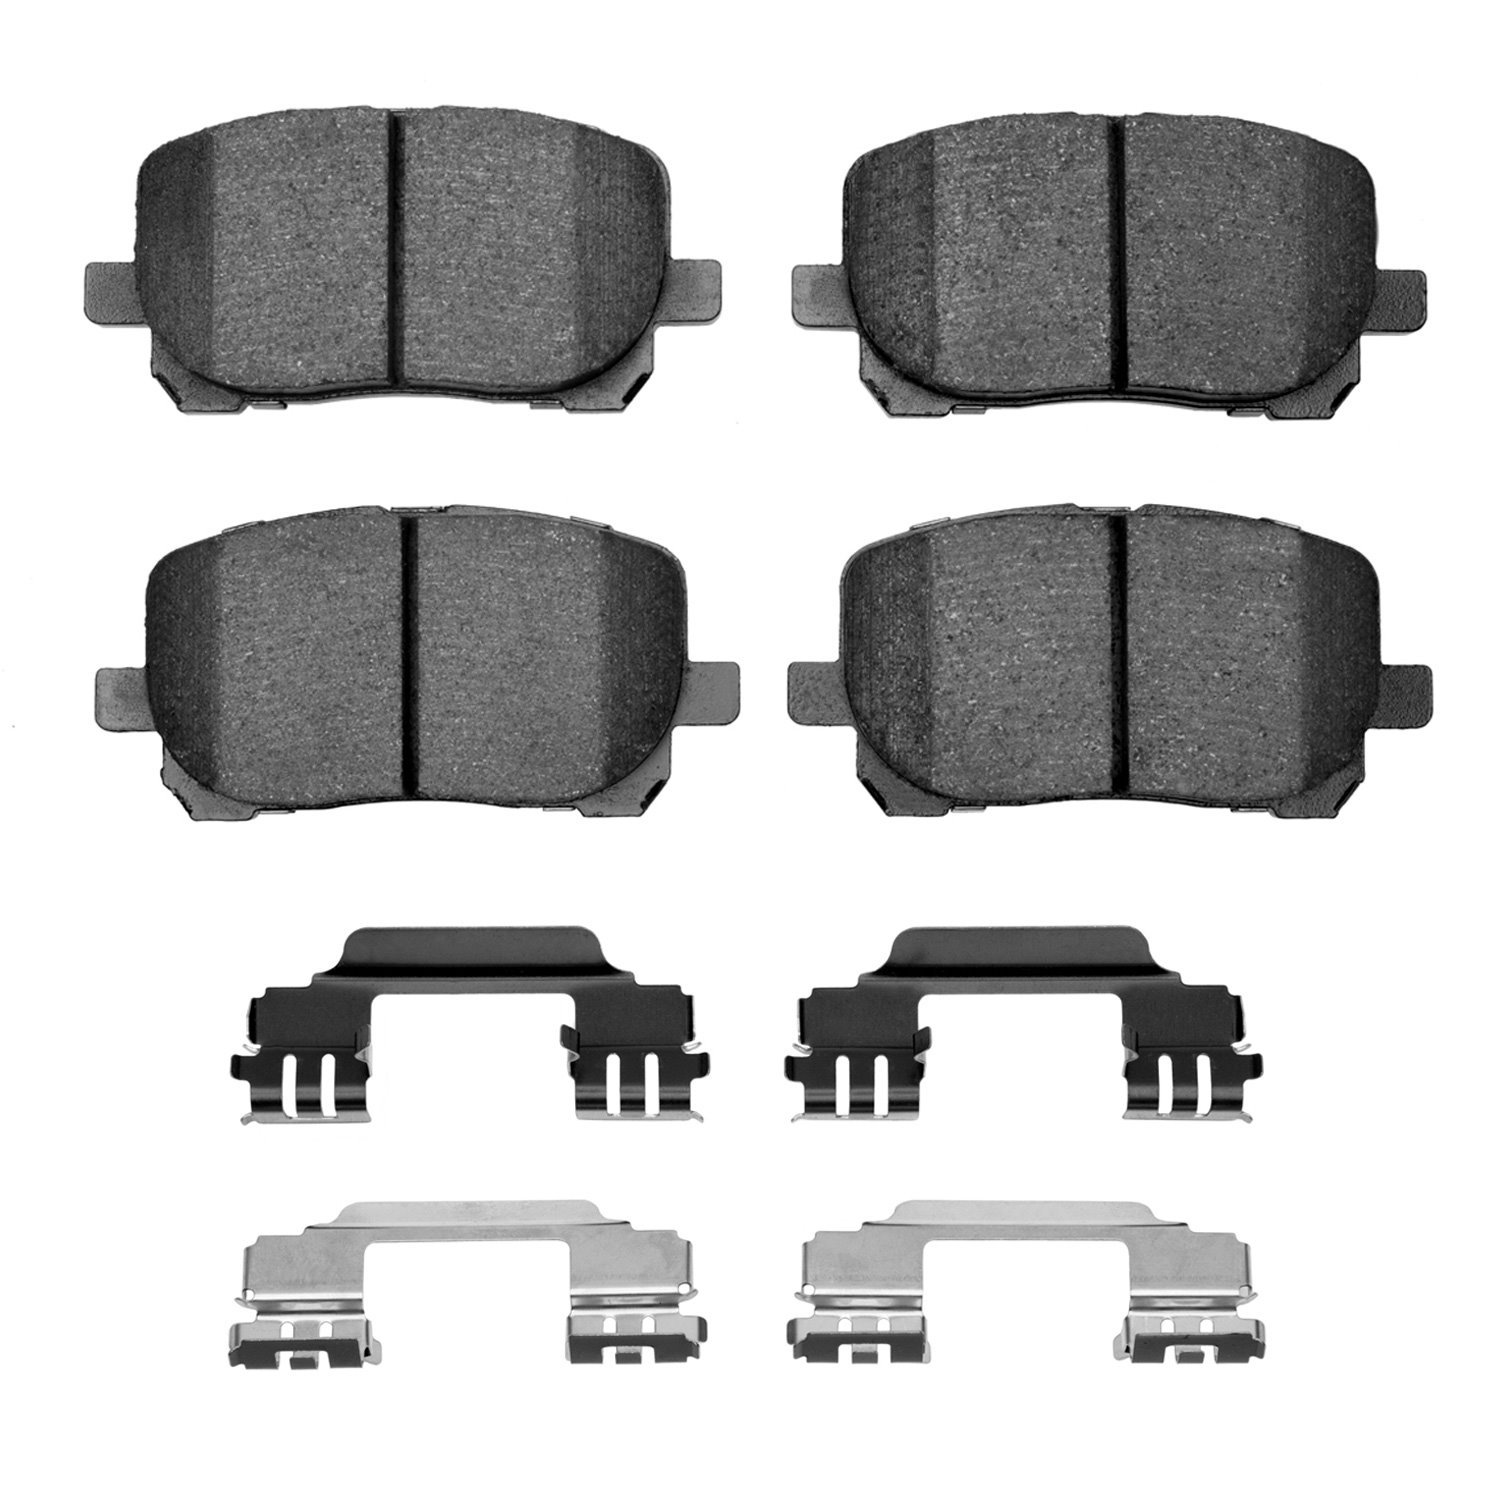 Ceramic Brake Pads & Hardware Kit, 2003-2008 Fits Multiple Makes/Models, Position: Front